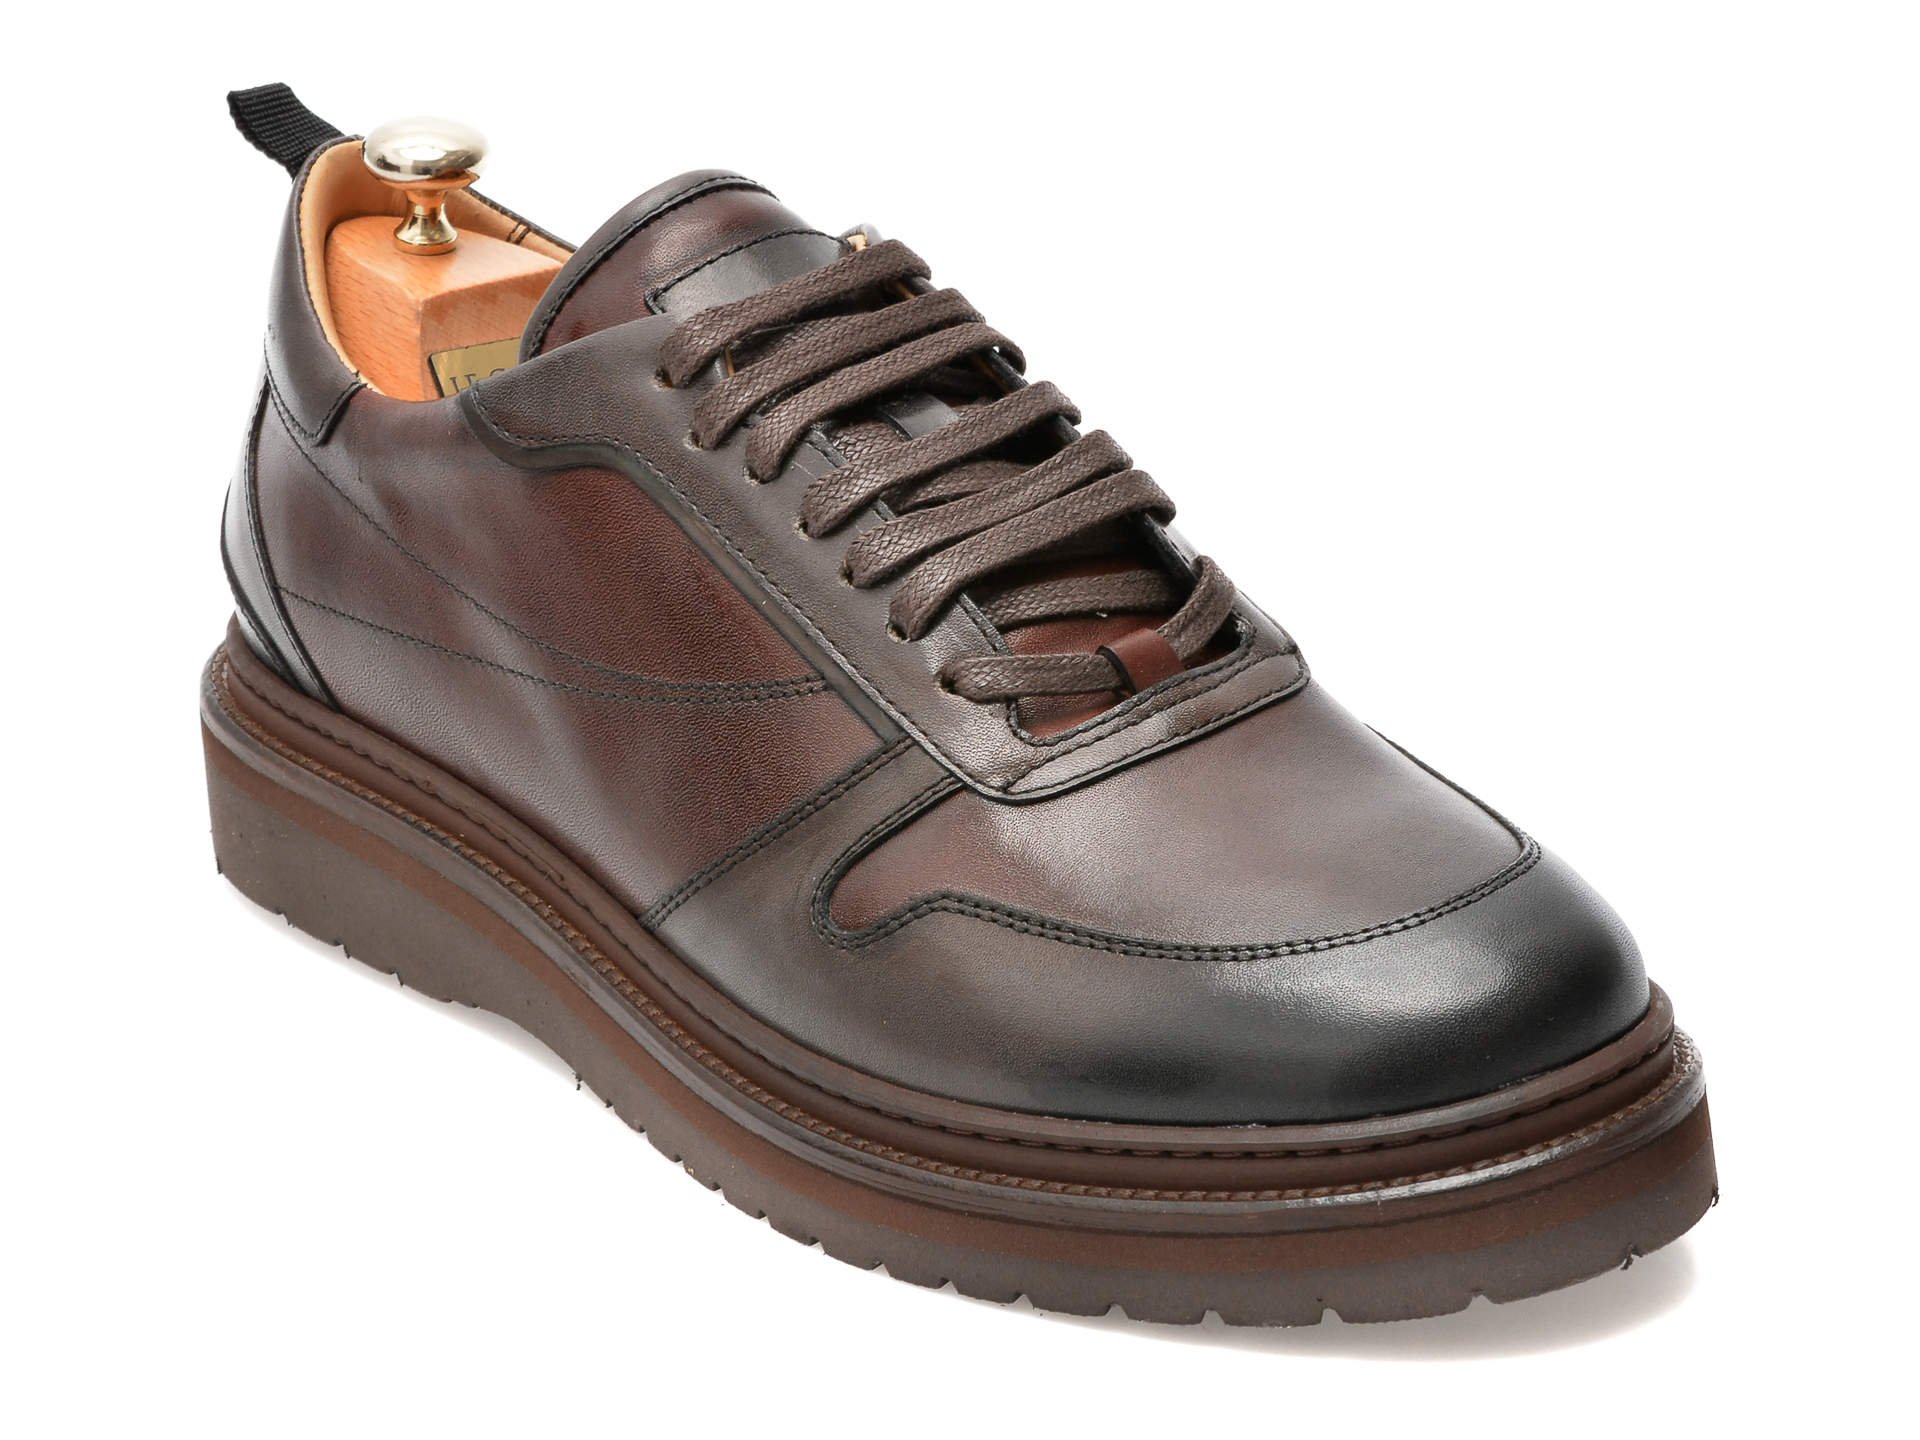 Pantofi LE COLONEL maro, 64804, din piele naturala /barbati/pantofi /barbati/pantofi